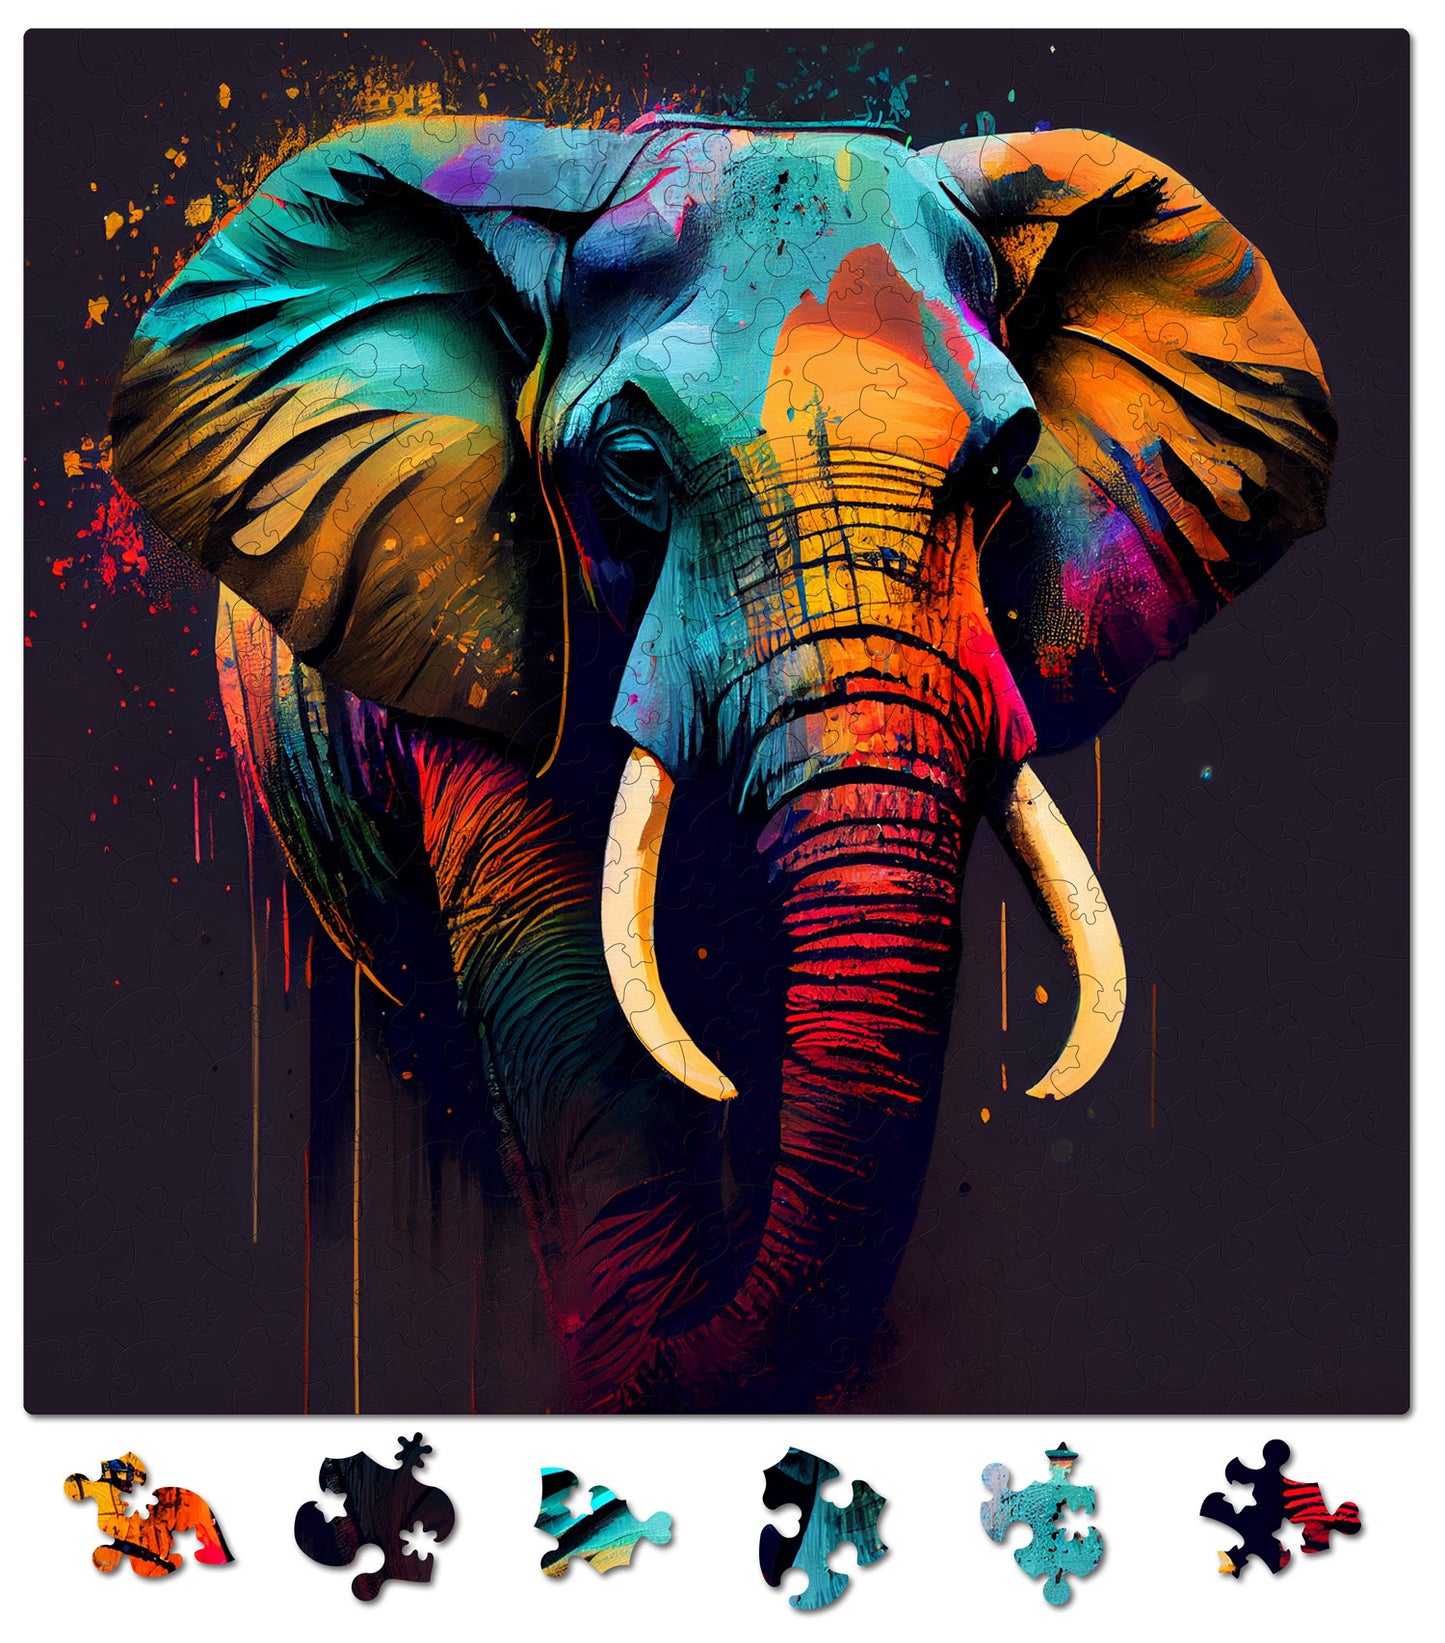 Puzzle cu Animale - Elefant 2 - 200 piese - 30 x 30 cm